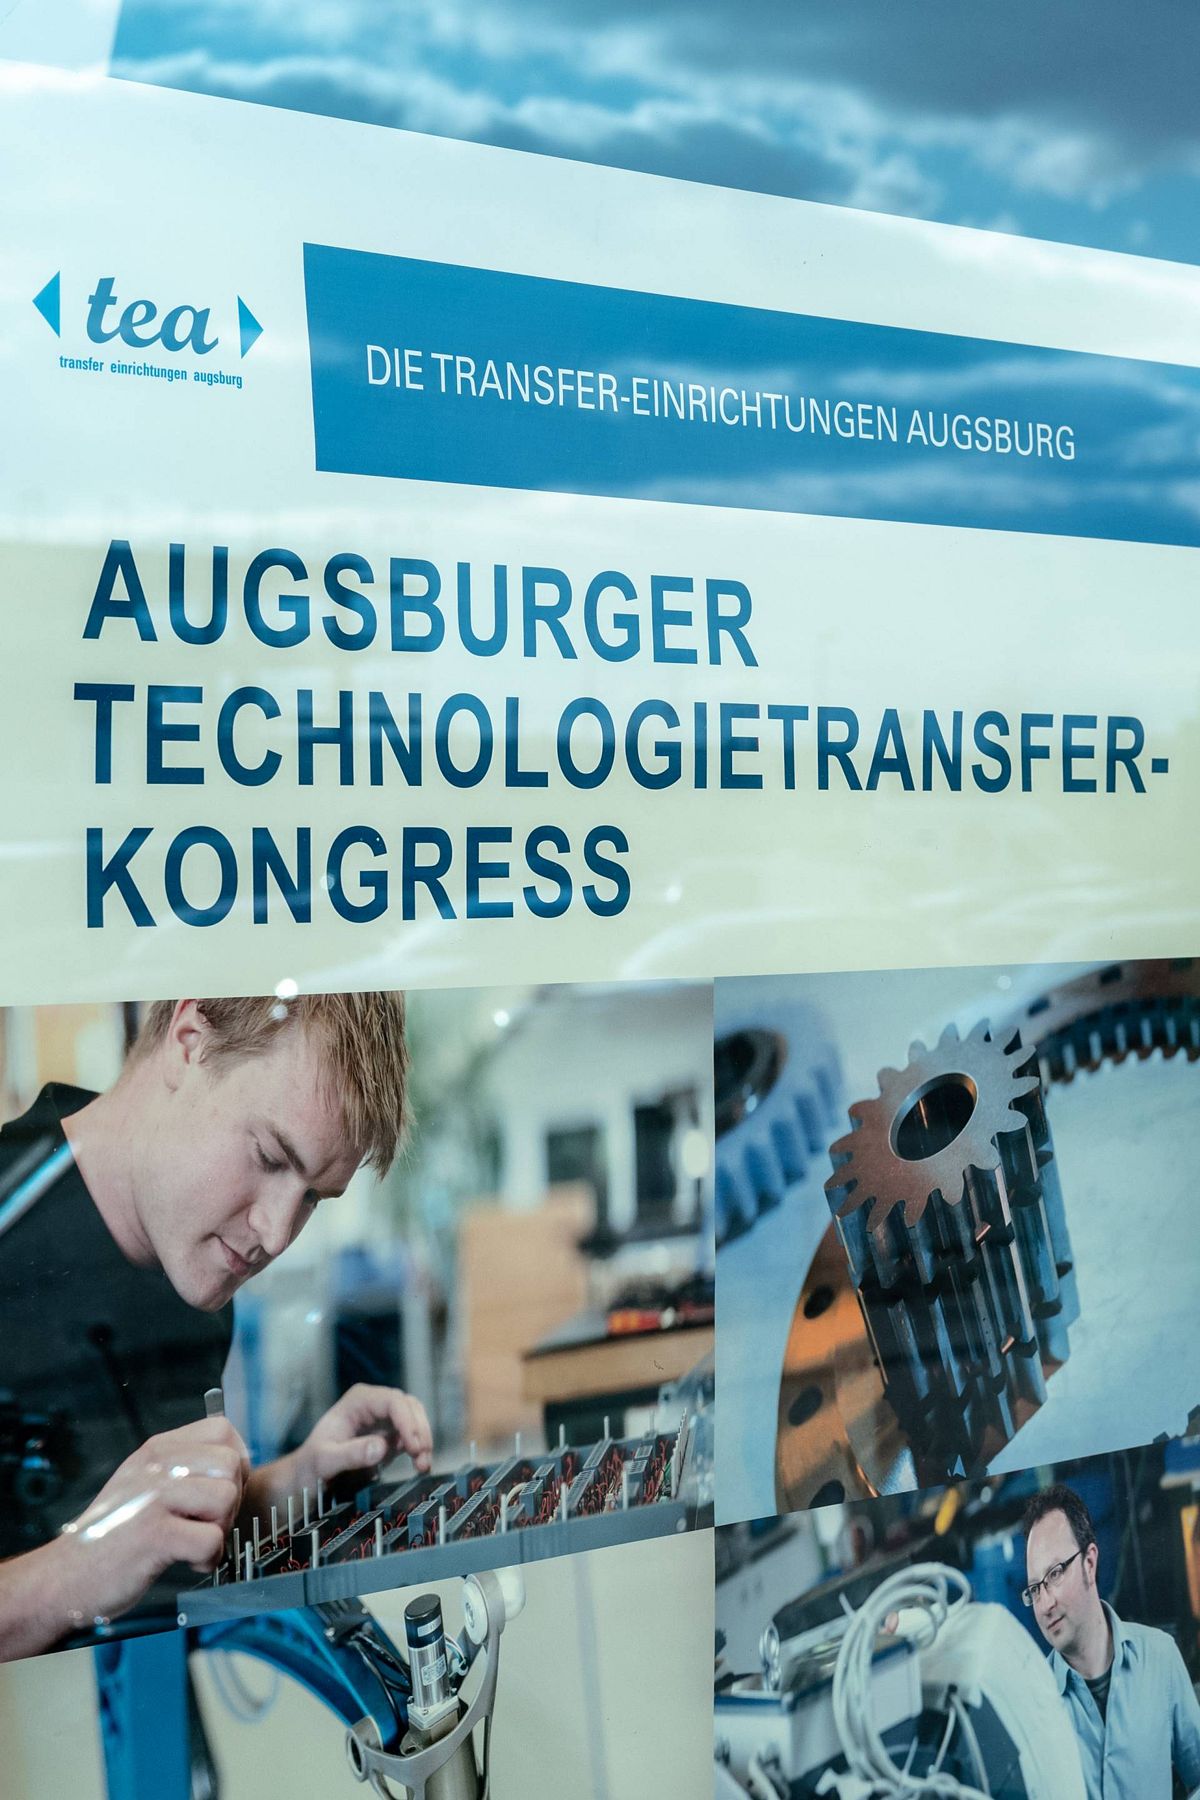 Einmal jährlich laden die Transfereinrichtungen Augsburg zum Technologietransferkongress ein.